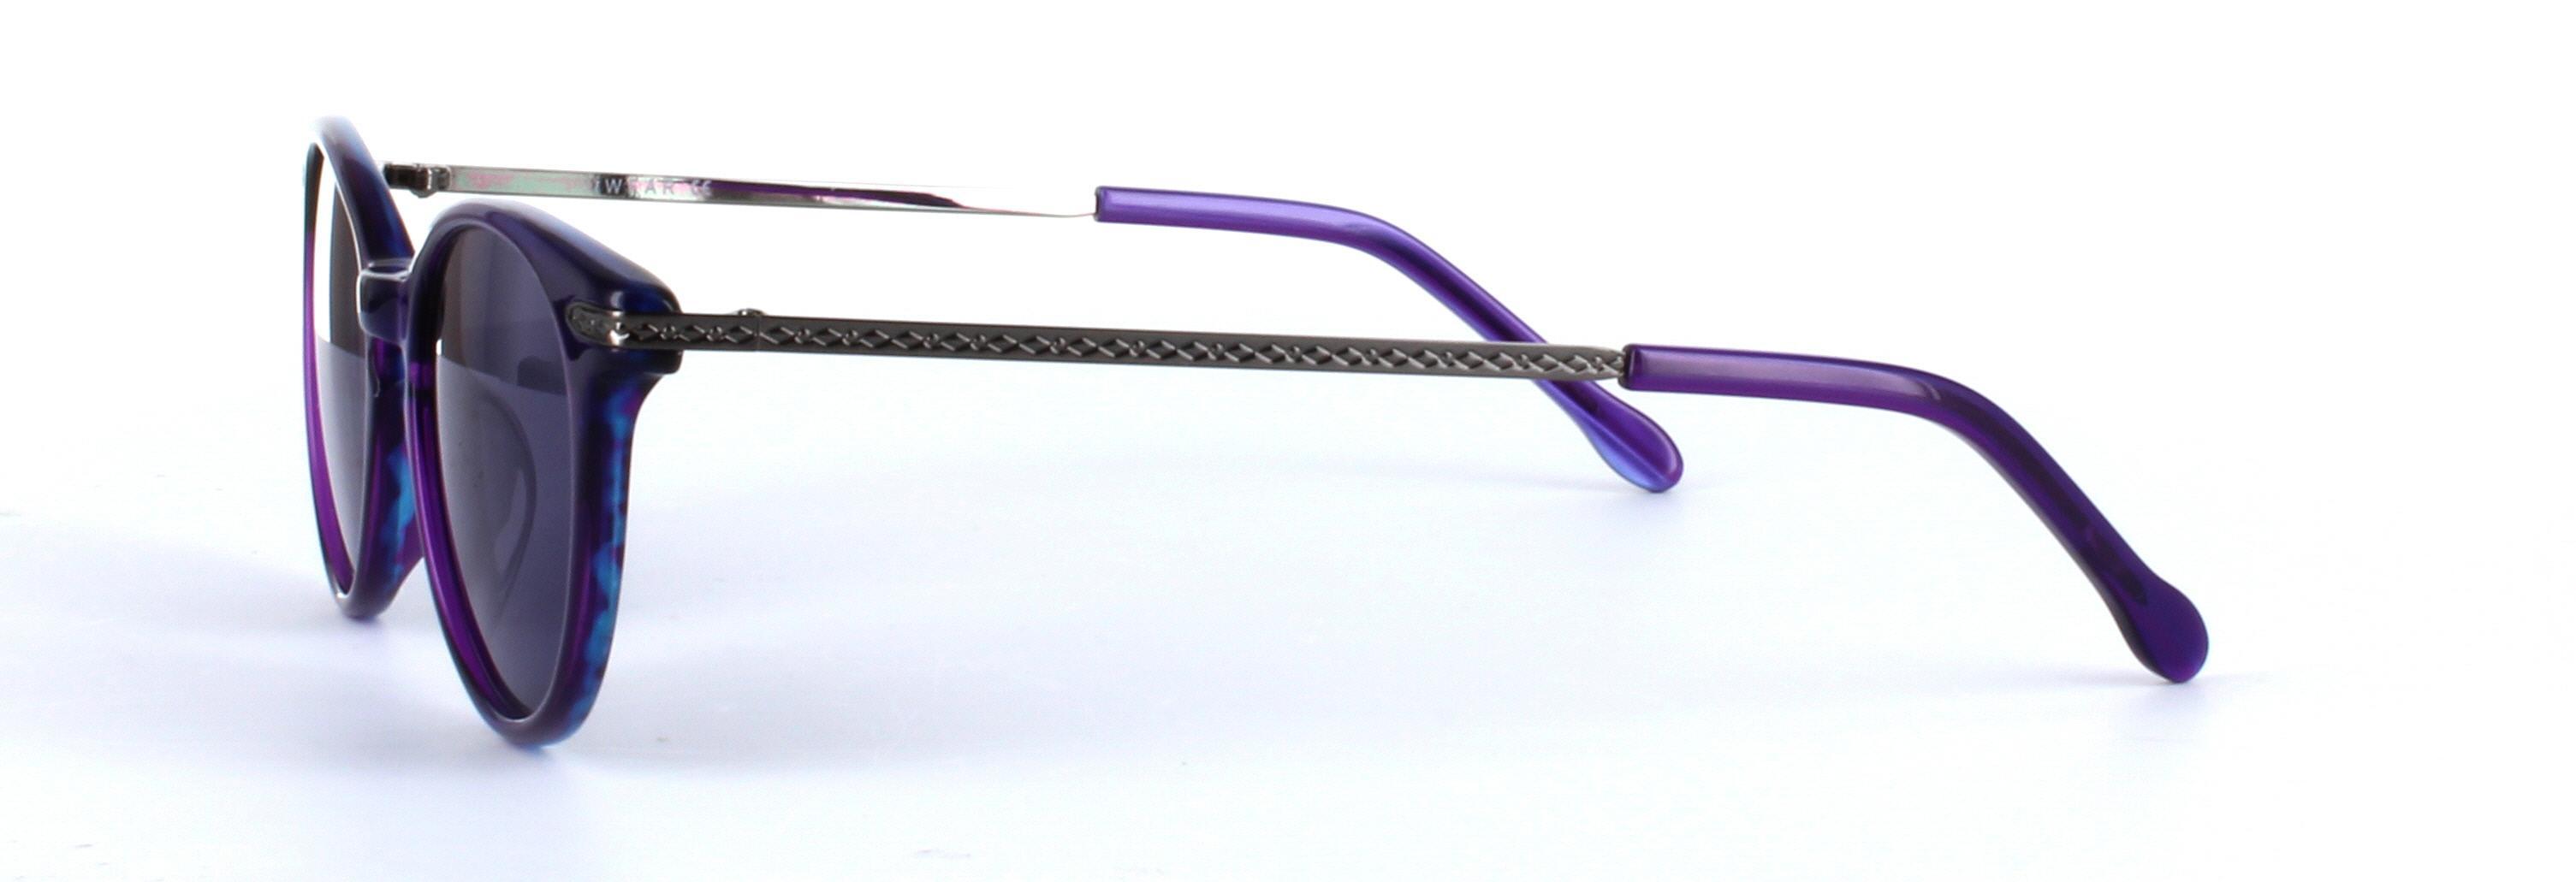 Amanda Purple Full Rim Round Acetate Sunglasses - Image View 2